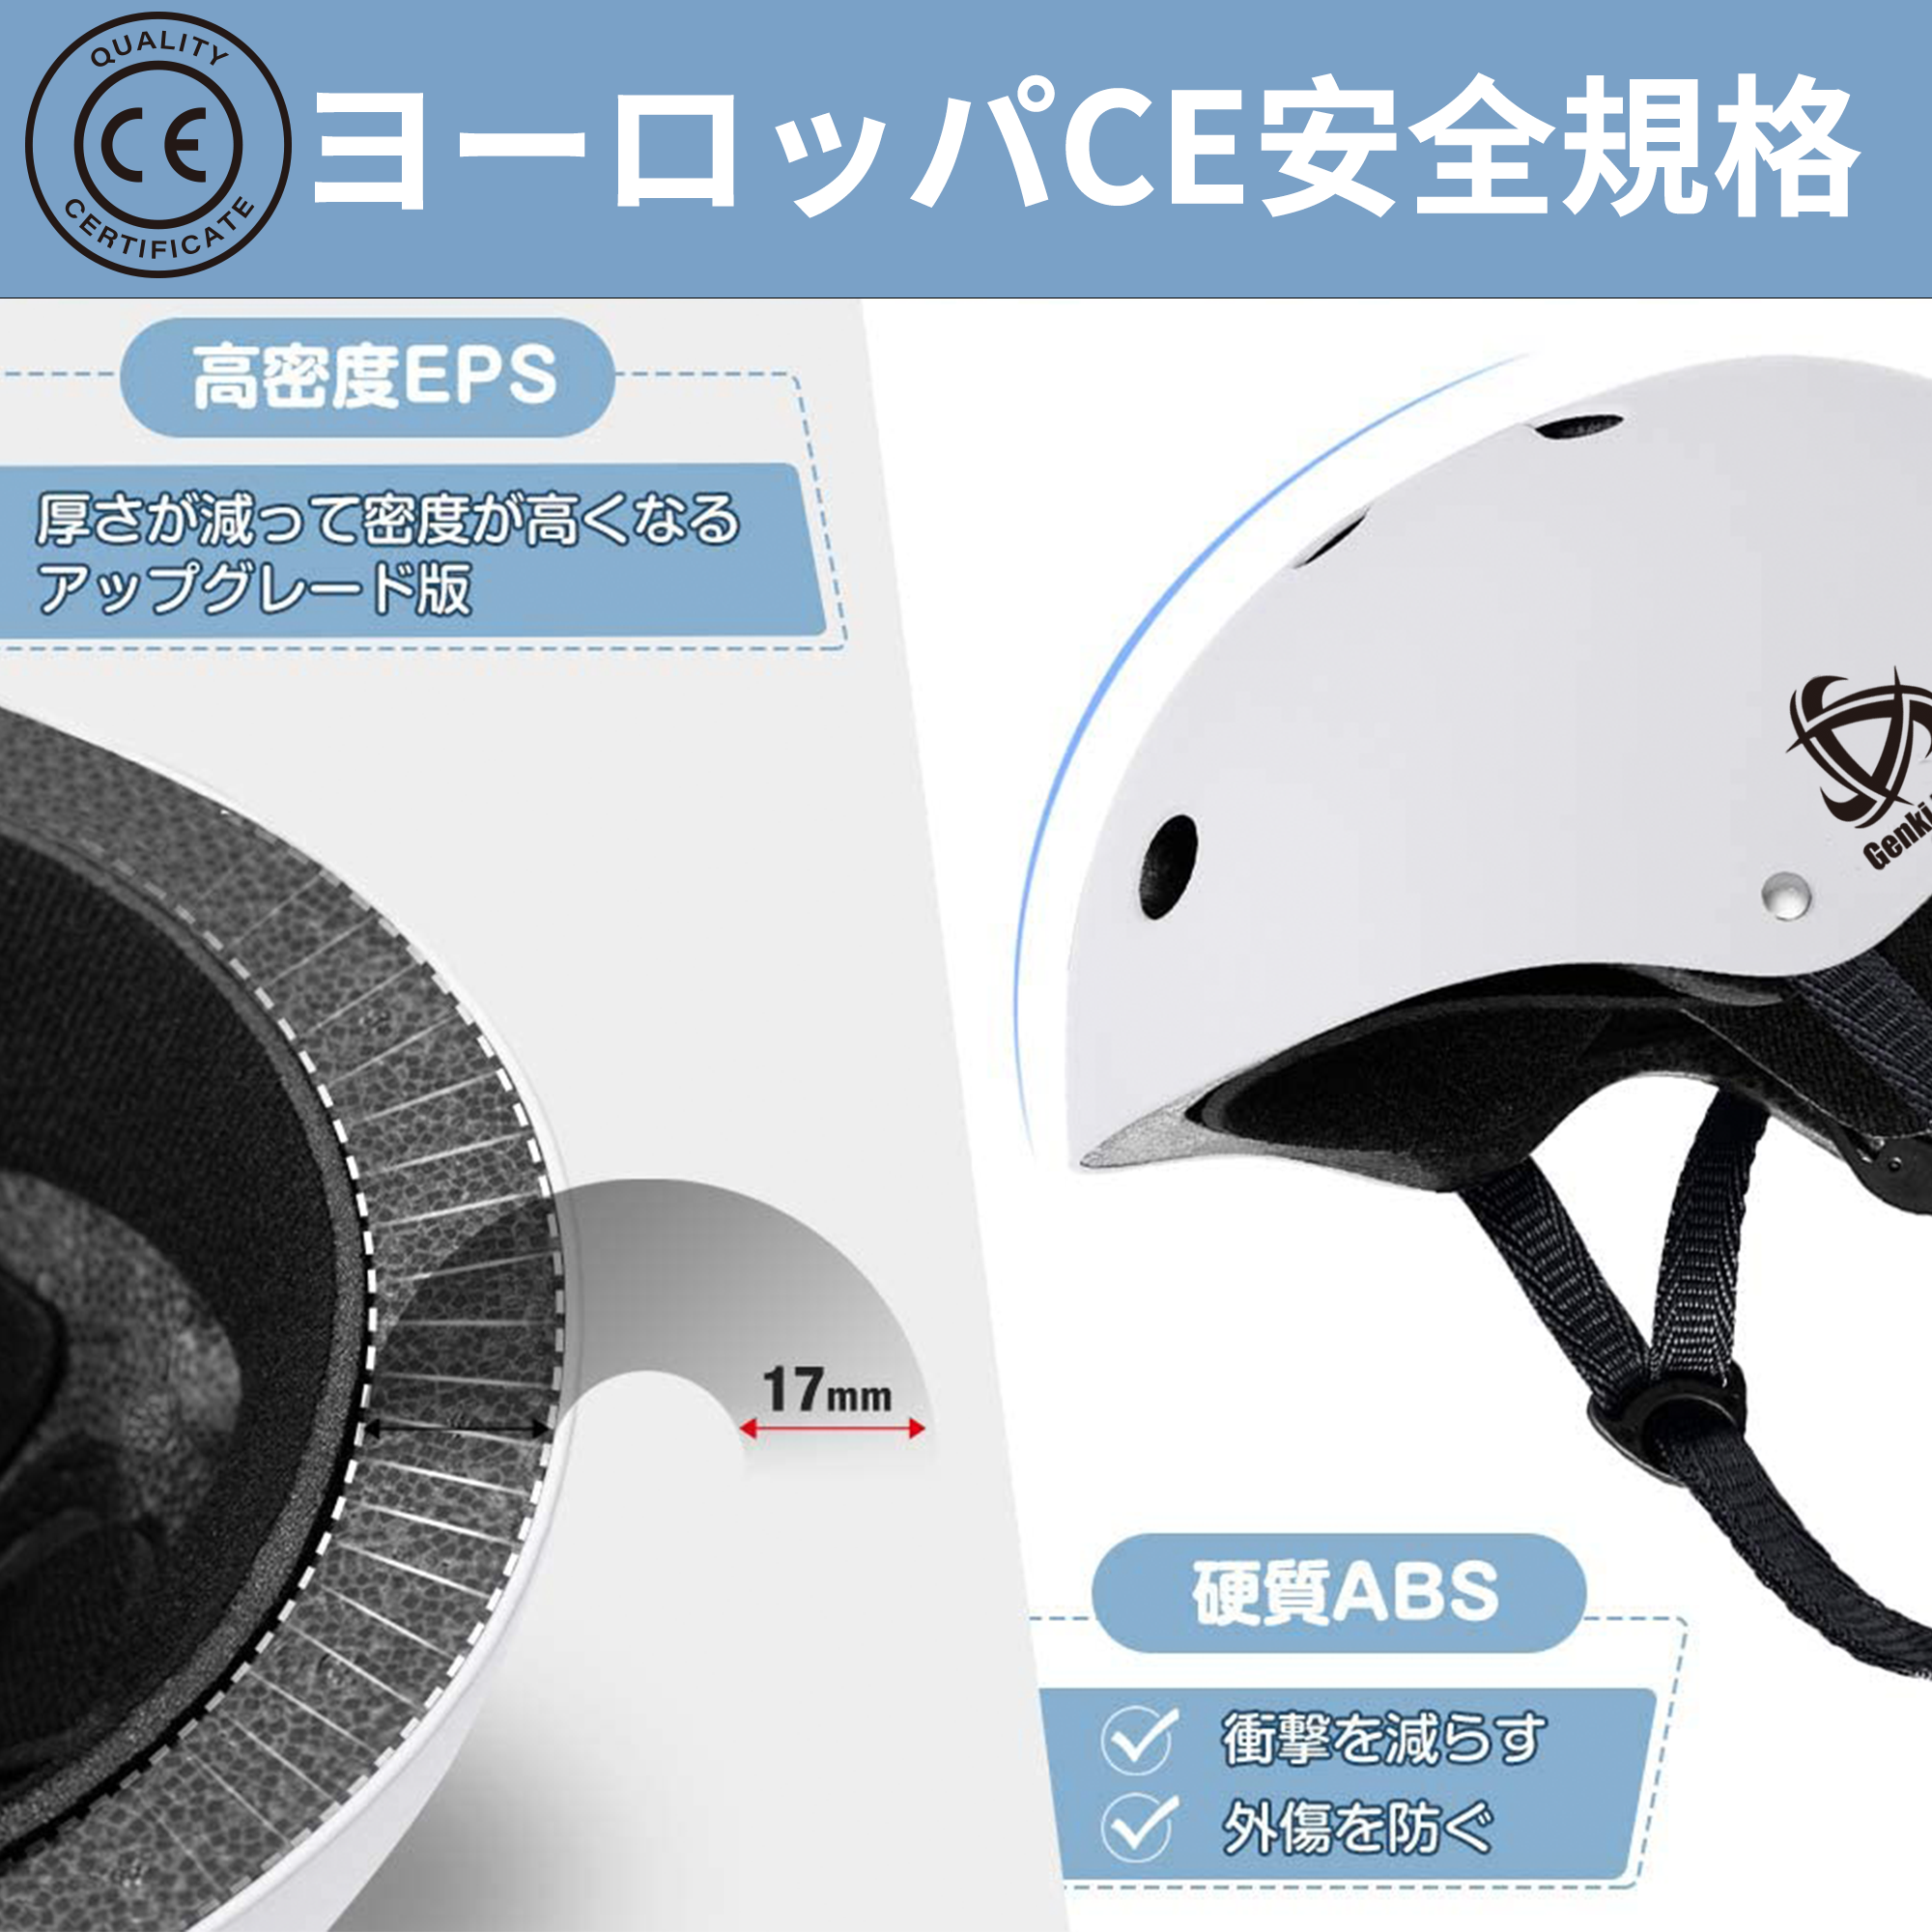 自転車ヘルメット CE安全規格 子供大人兼用 (ピンク) – (株) ゲンキラボ